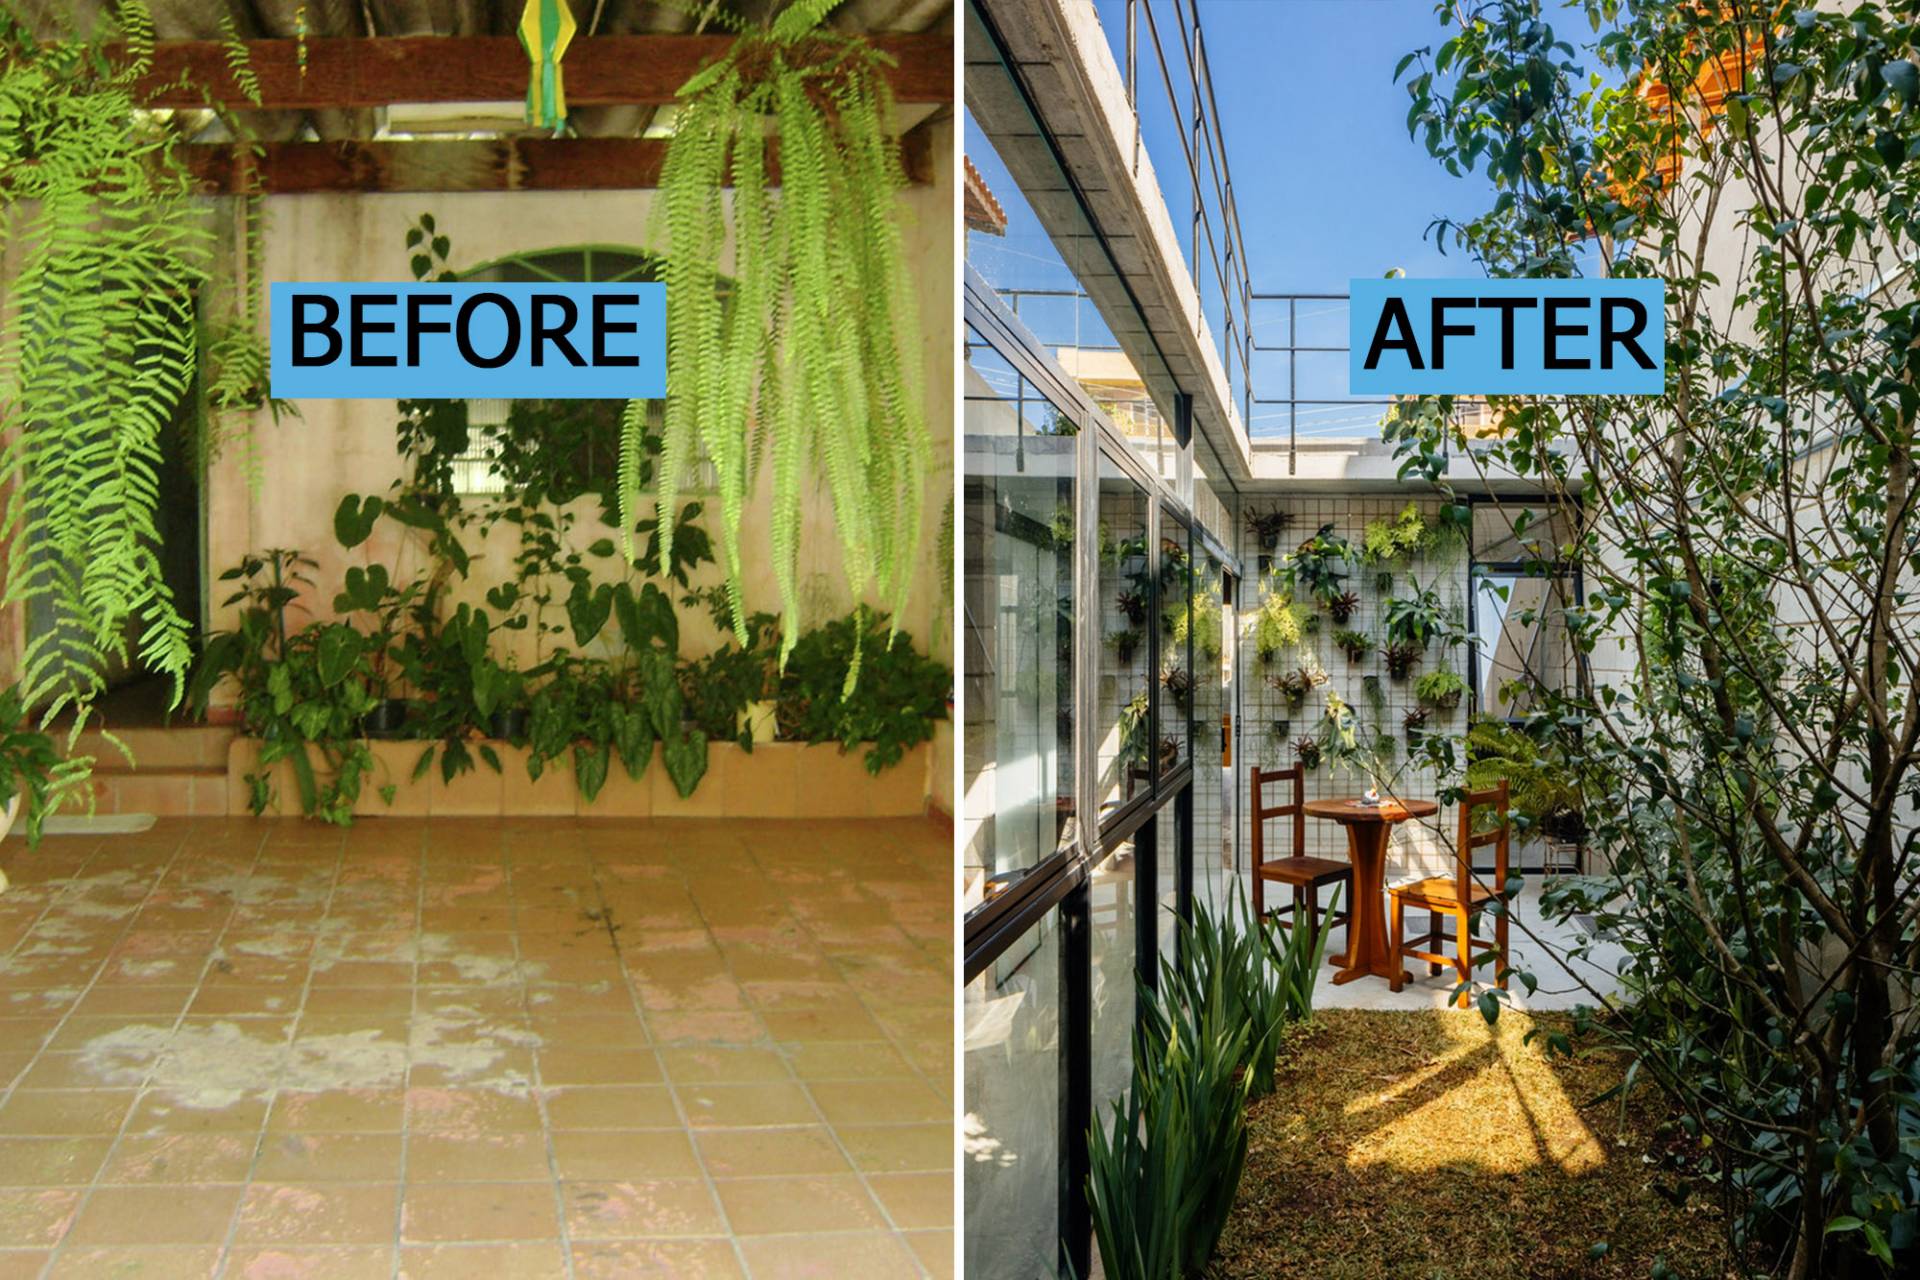 Before - After: Nhà cấp 4 xuống cấp nghiêm trọng bỗng hóa tổ ấm sáng bừng với khoảng vườn bên hông như vỗ về xúc cảm